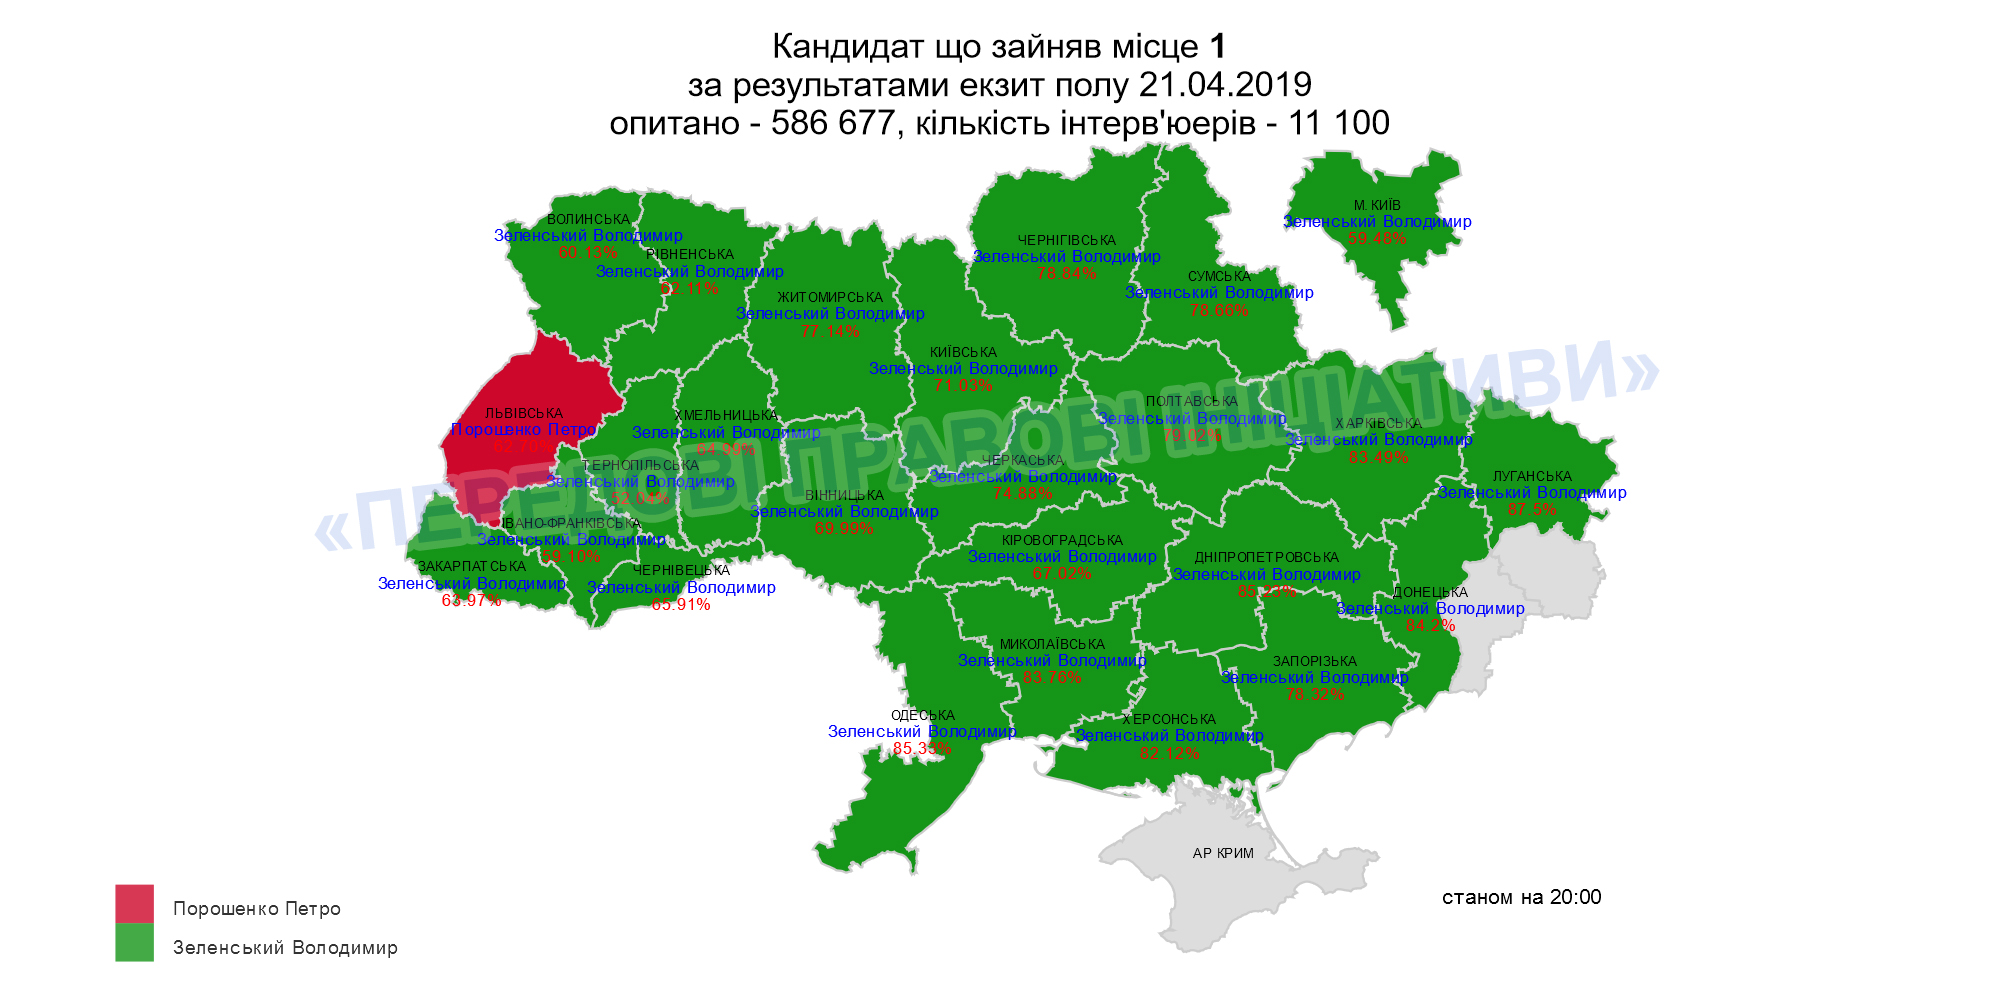 У Чернівецькій області за Зеленського проголосували понад 65% виборців, за Порошенка - понад 30, - Exitpoll-2019 ППІ